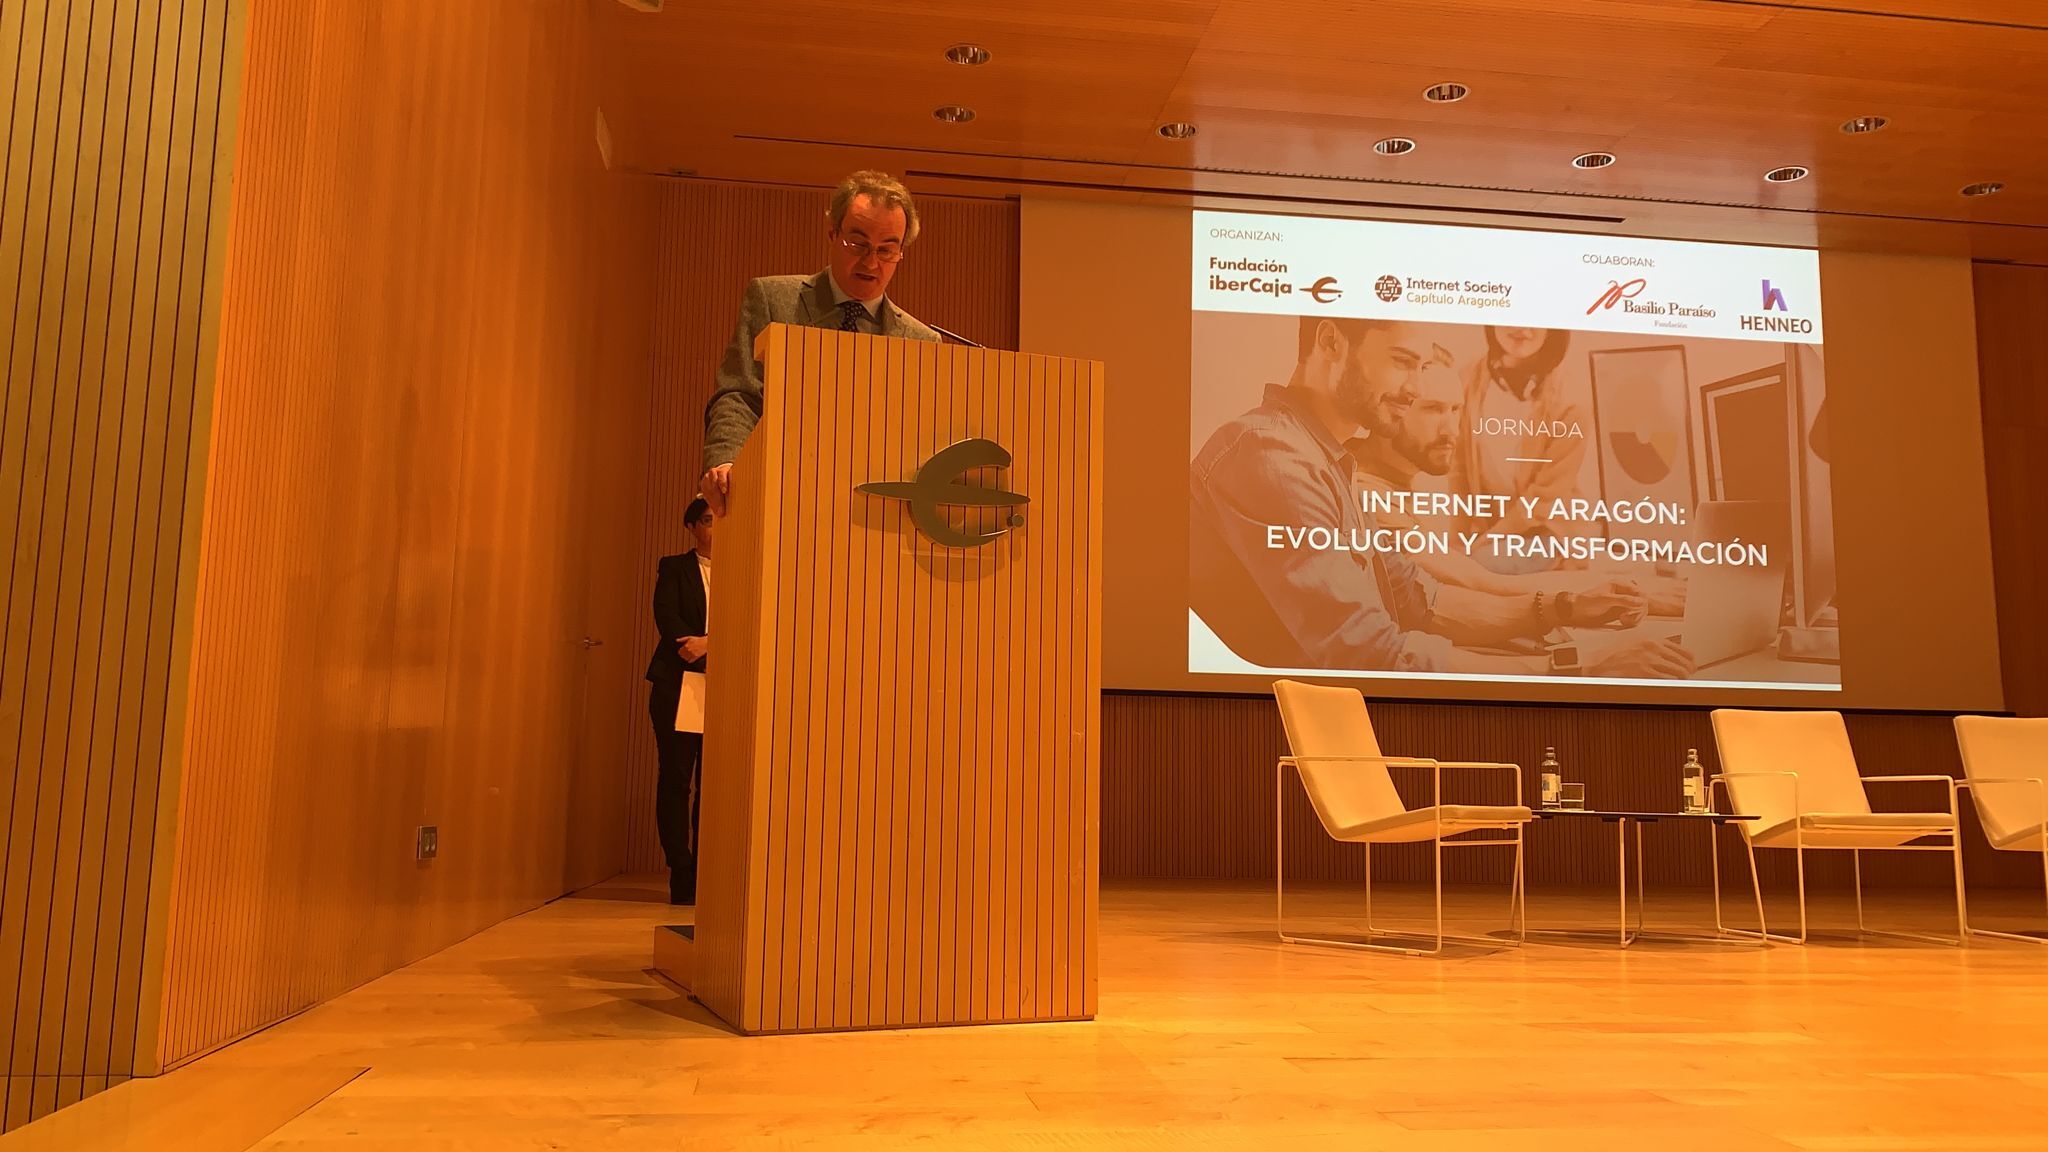 La Fundación Basilio Paraíso colabora en la jornada “Internet y Aragón: Evolución y transformación”